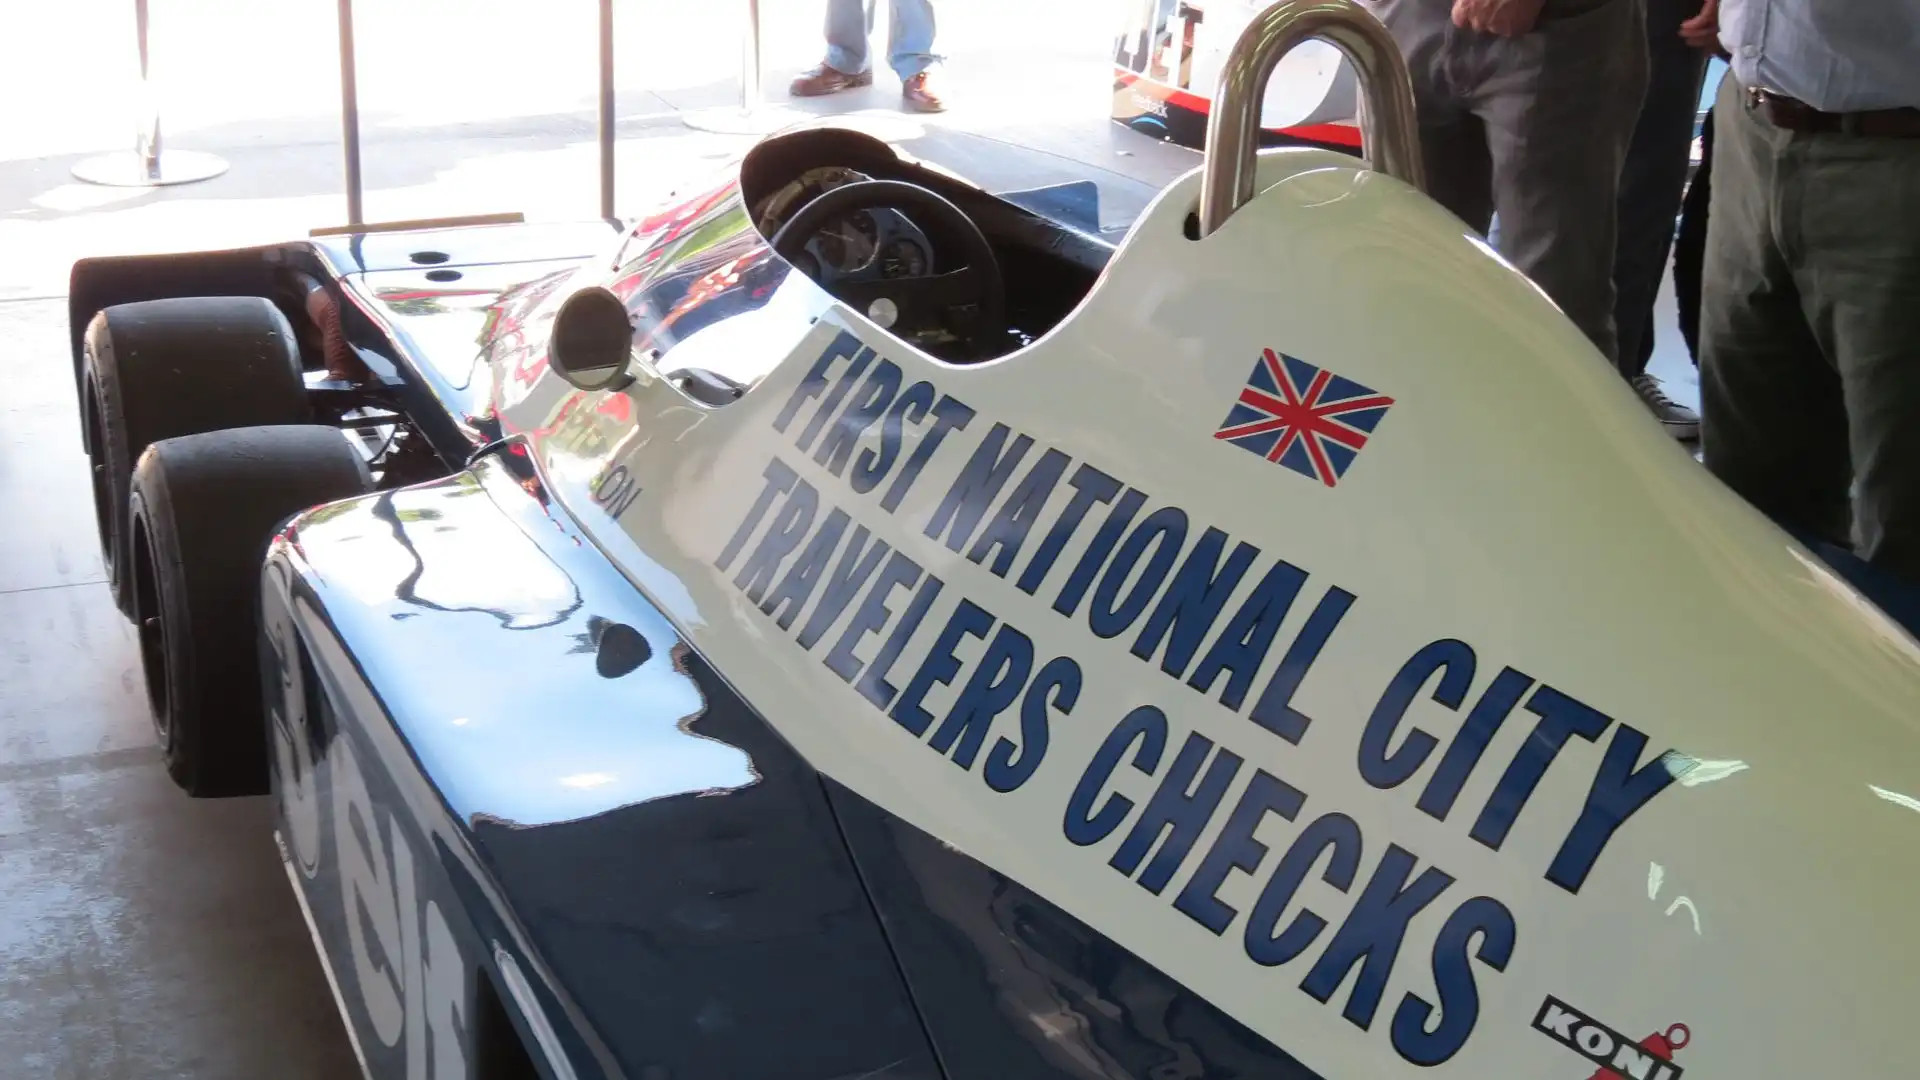 Patrick Depailler, che era al volante, si qualificò con un lusinghiero terzo tempo